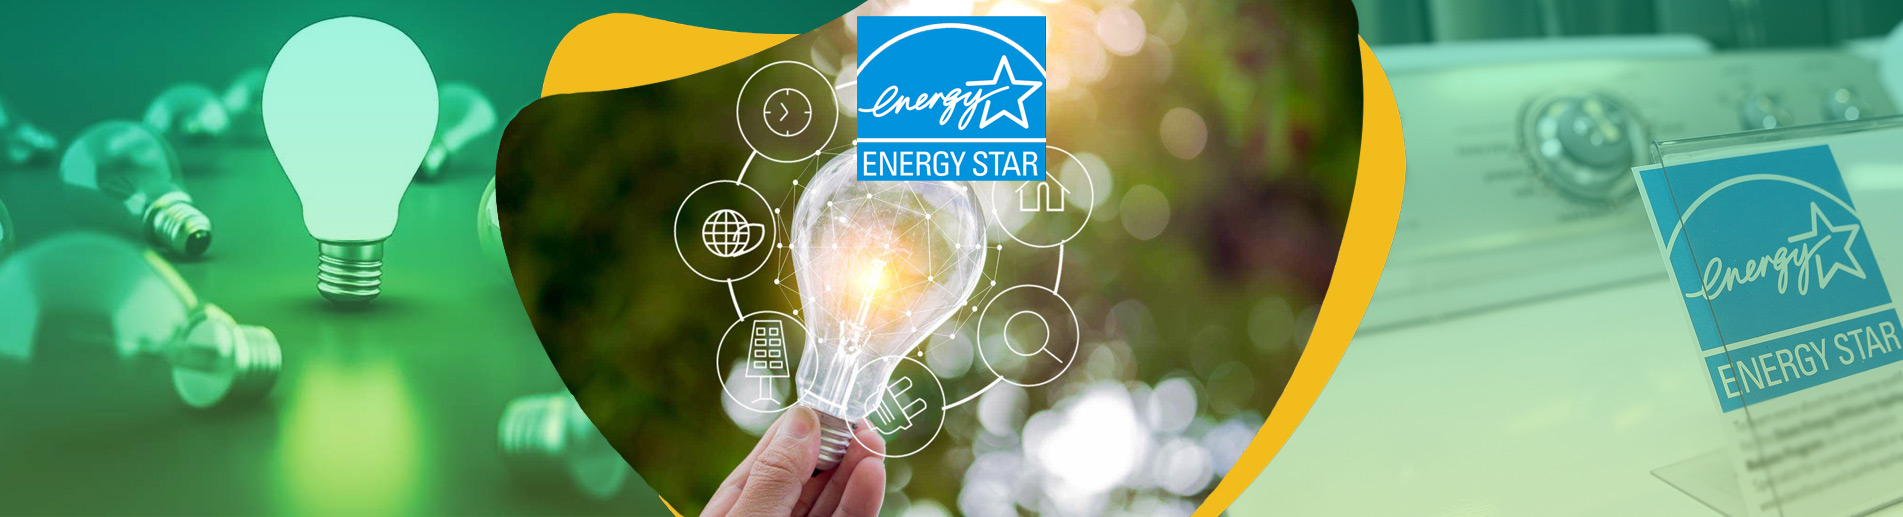 ENERGY STAR İŞARETİ Amerika Enerji Tasarrufu Standardı